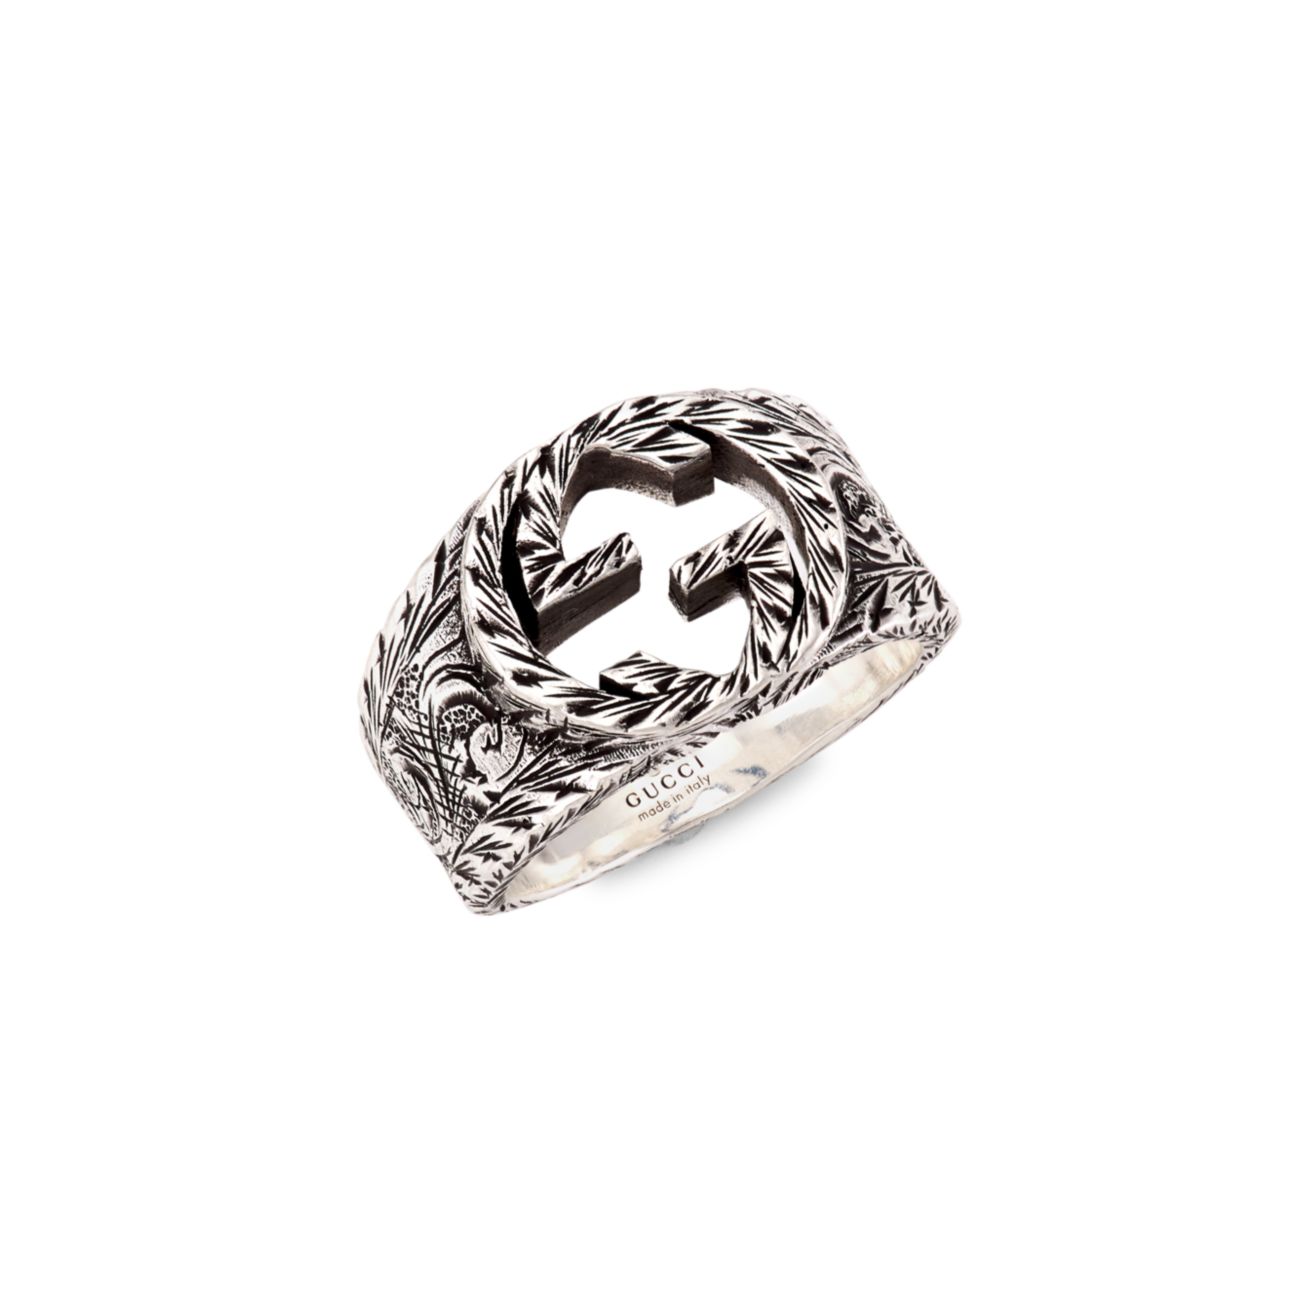 Серебряное кольцо с переплетенными буквами G и деталями пейсли GUCCI